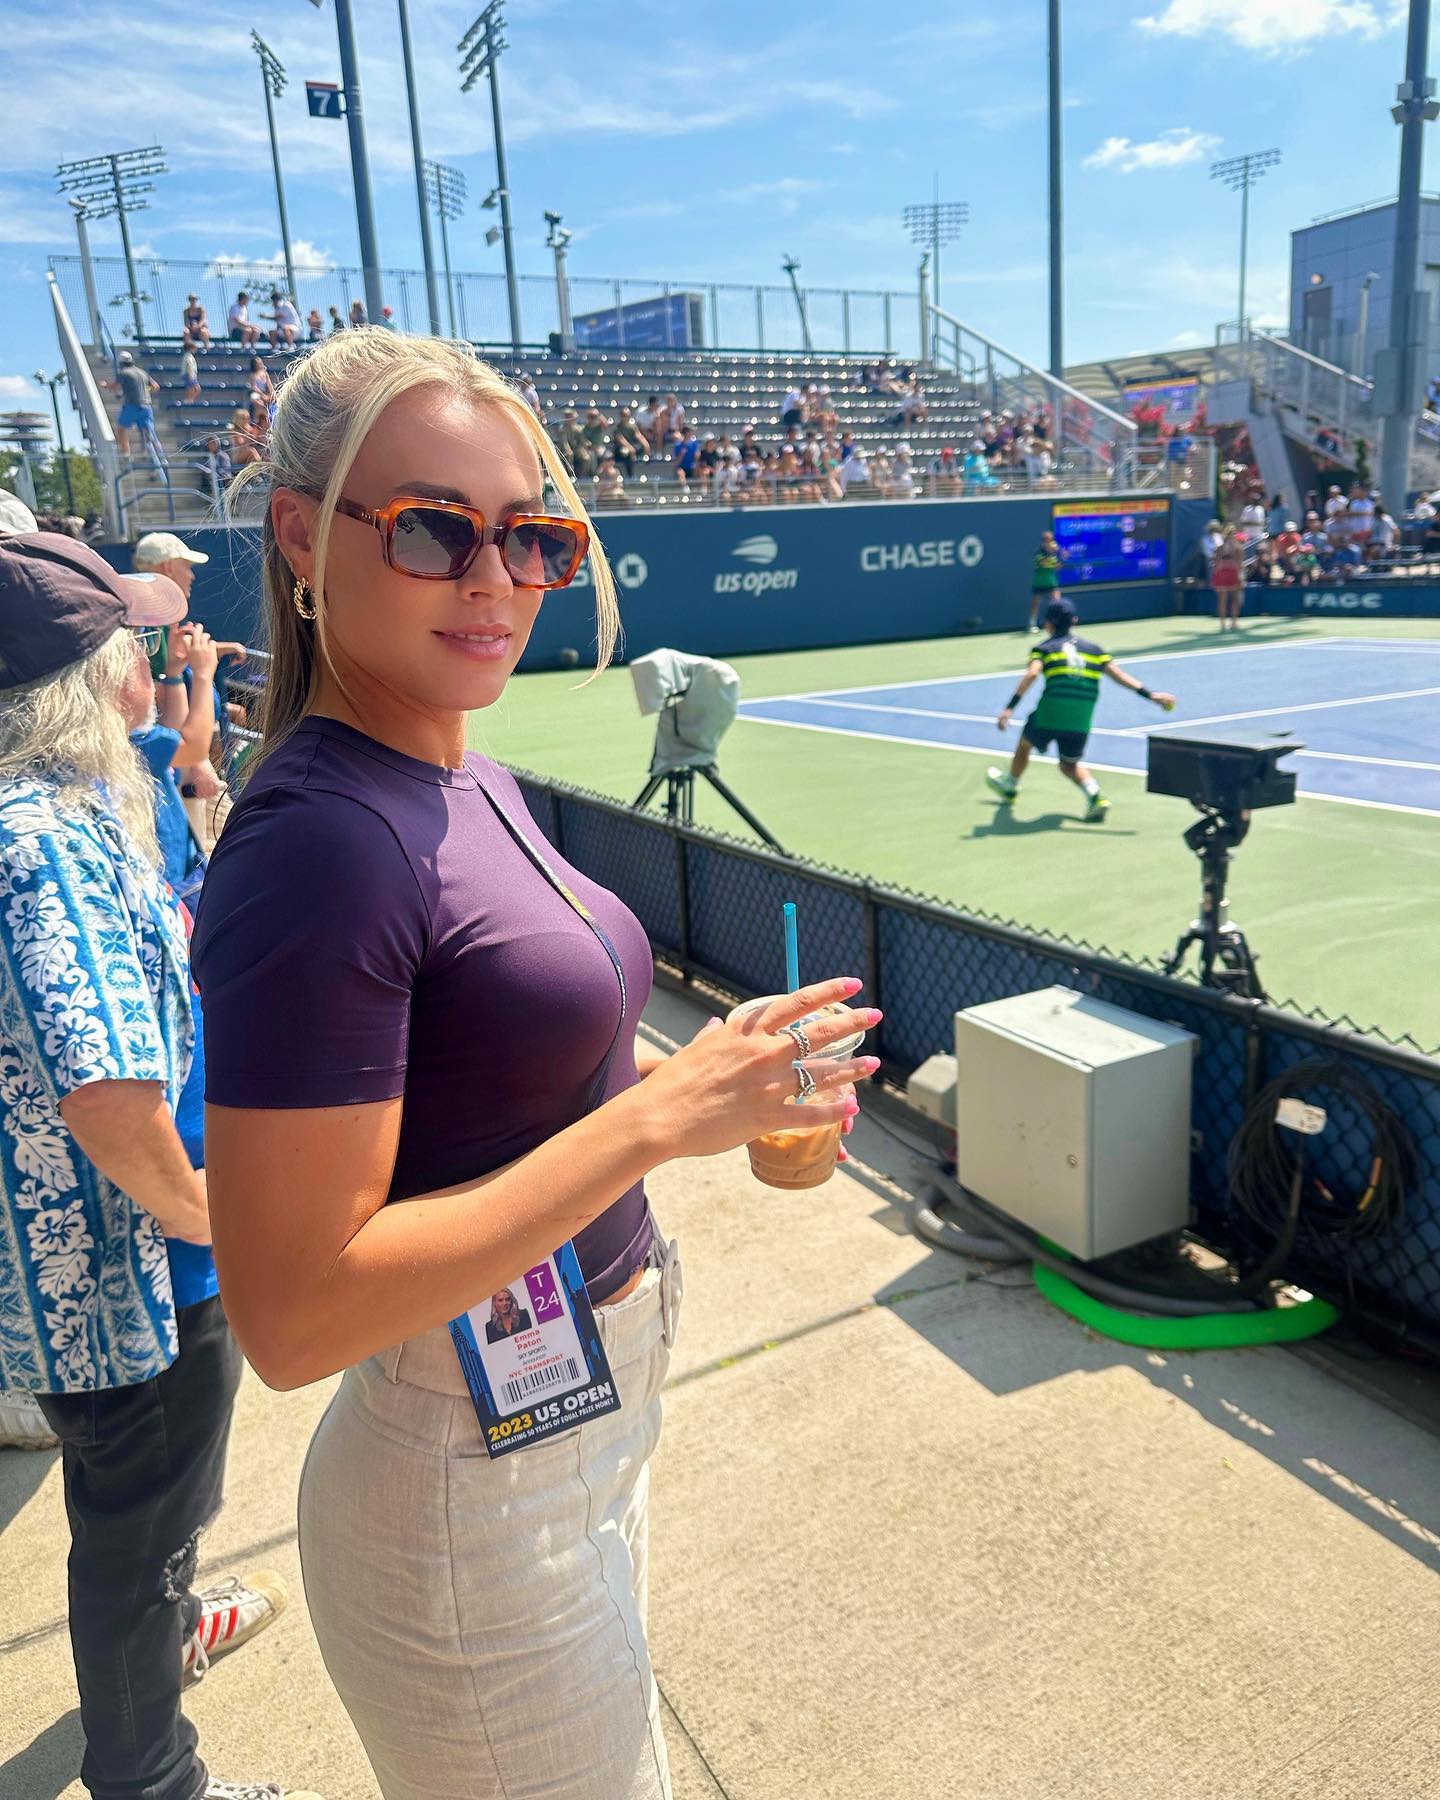 Emma war in New York, um über die US Open zu berichten